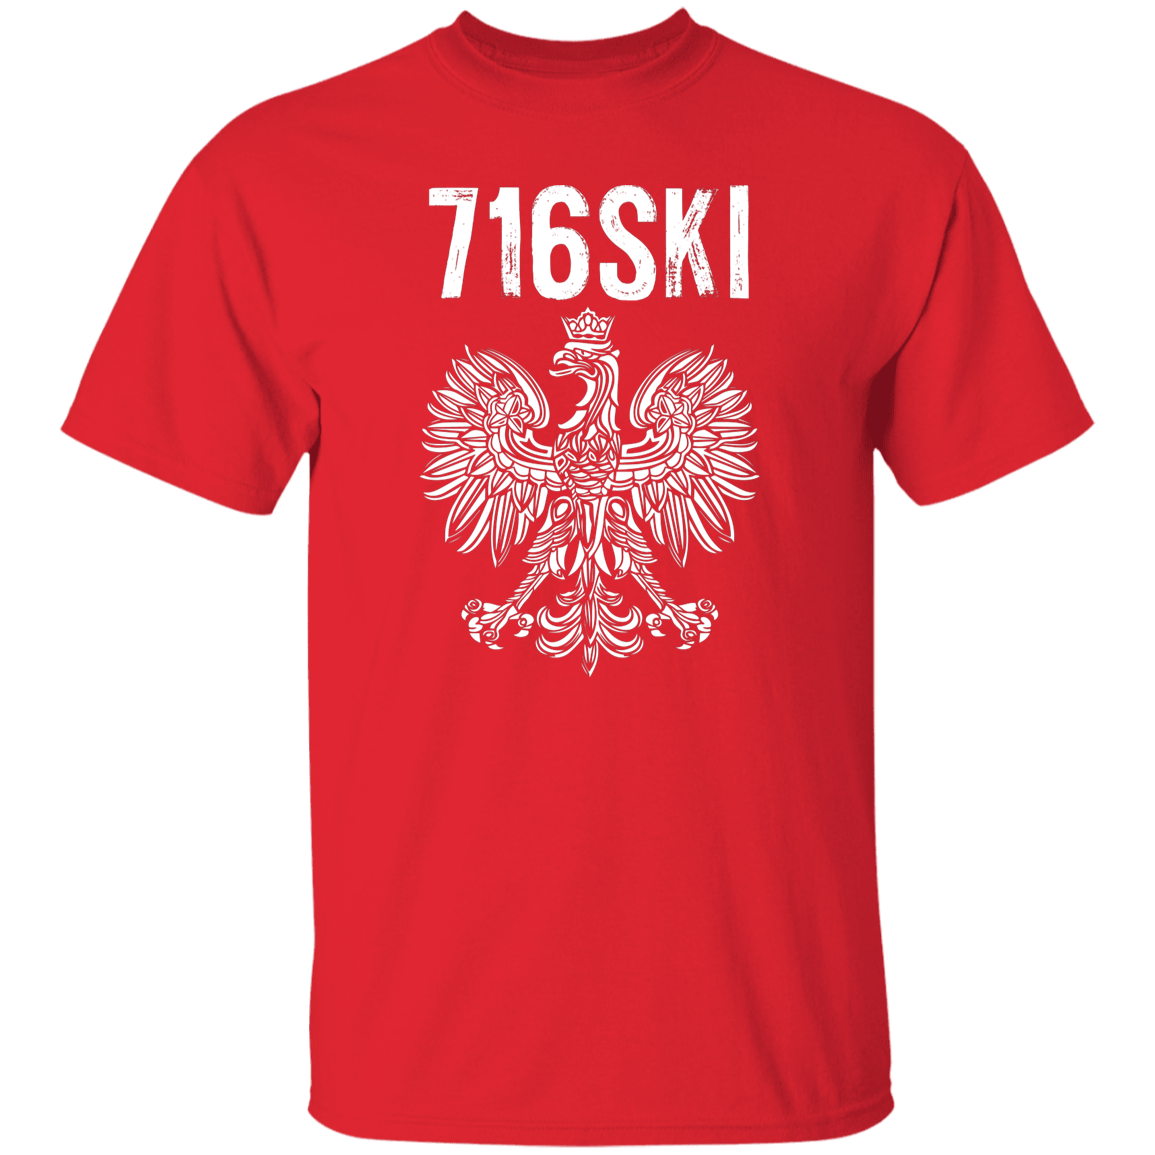 716SKI Buffalo New York Polish Pride Apparel CustomCat G500 5.3 oz. T-Shirt Red S